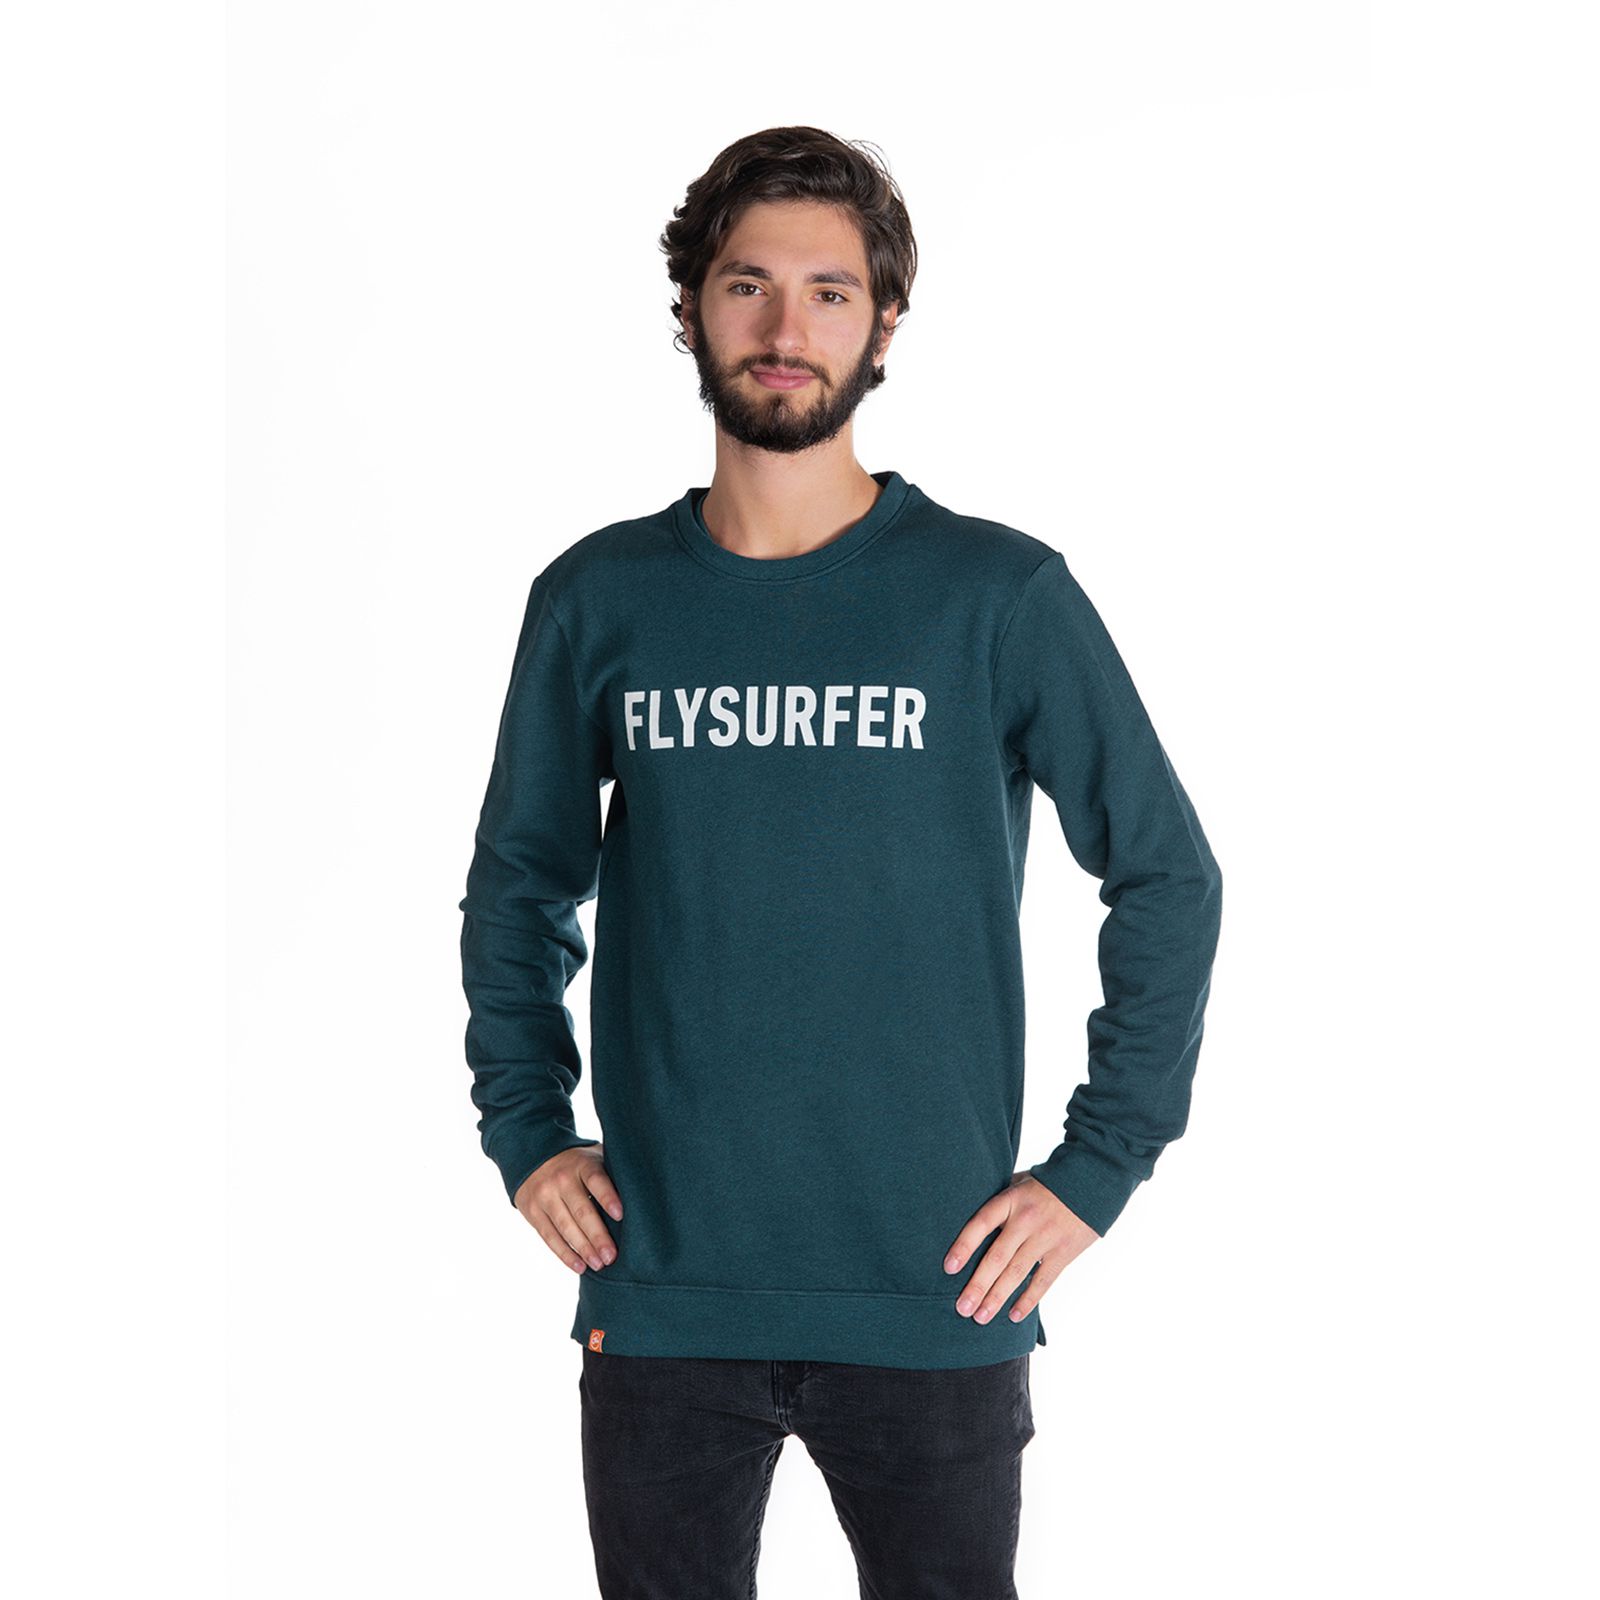 FLYSURFER Sweater Team Unisex